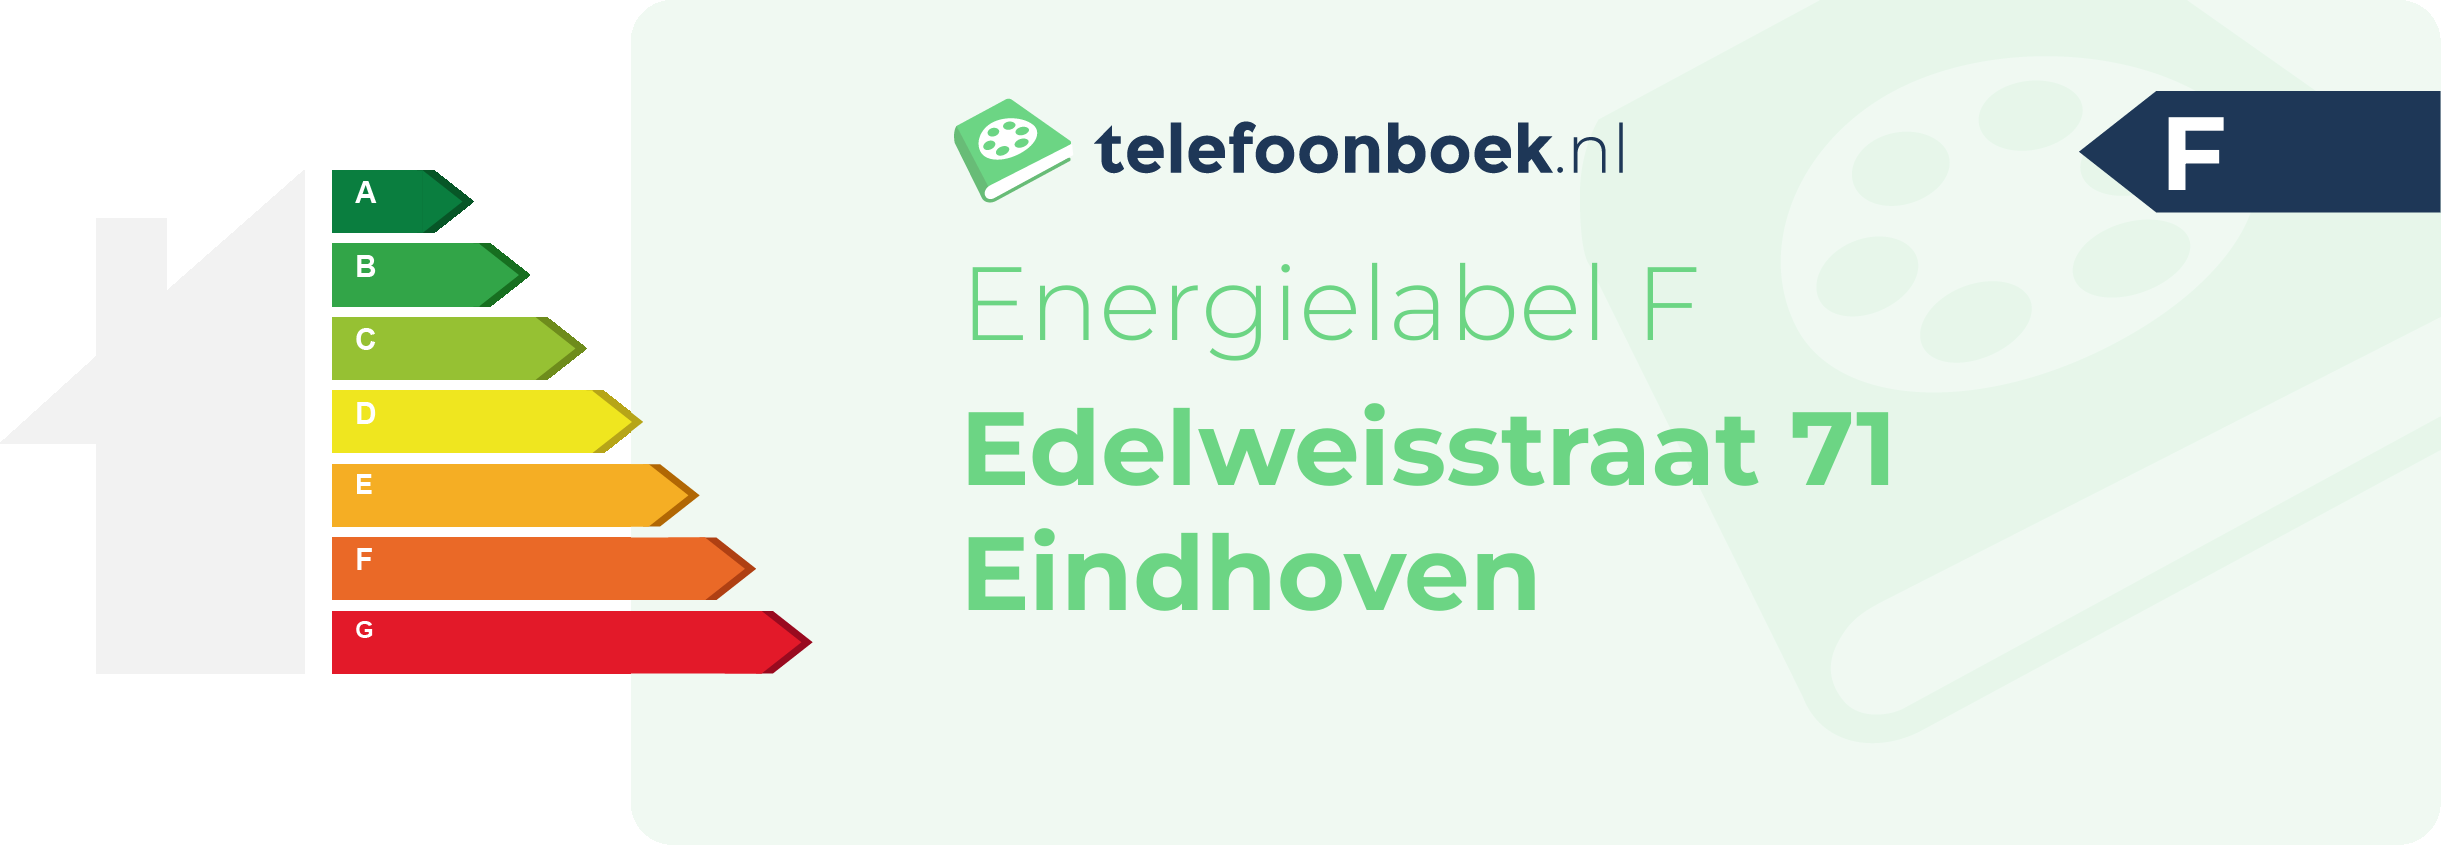 Energielabel Edelweisstraat 71 Eindhoven